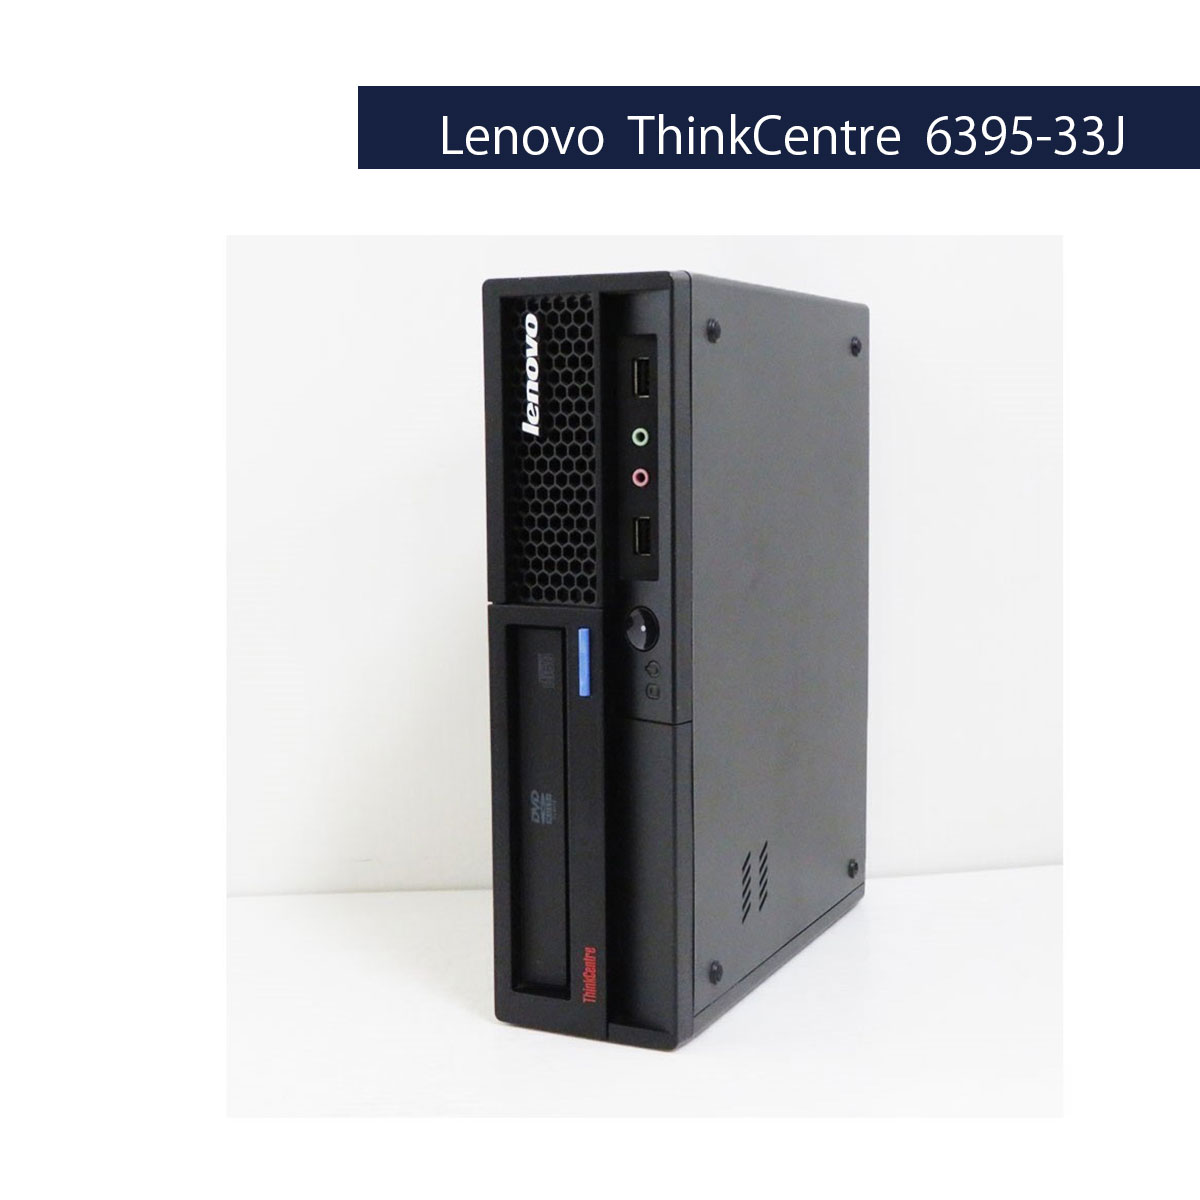 Lenovo ThinkCentre 6395-33J Core2Duo E8200 (Vista)